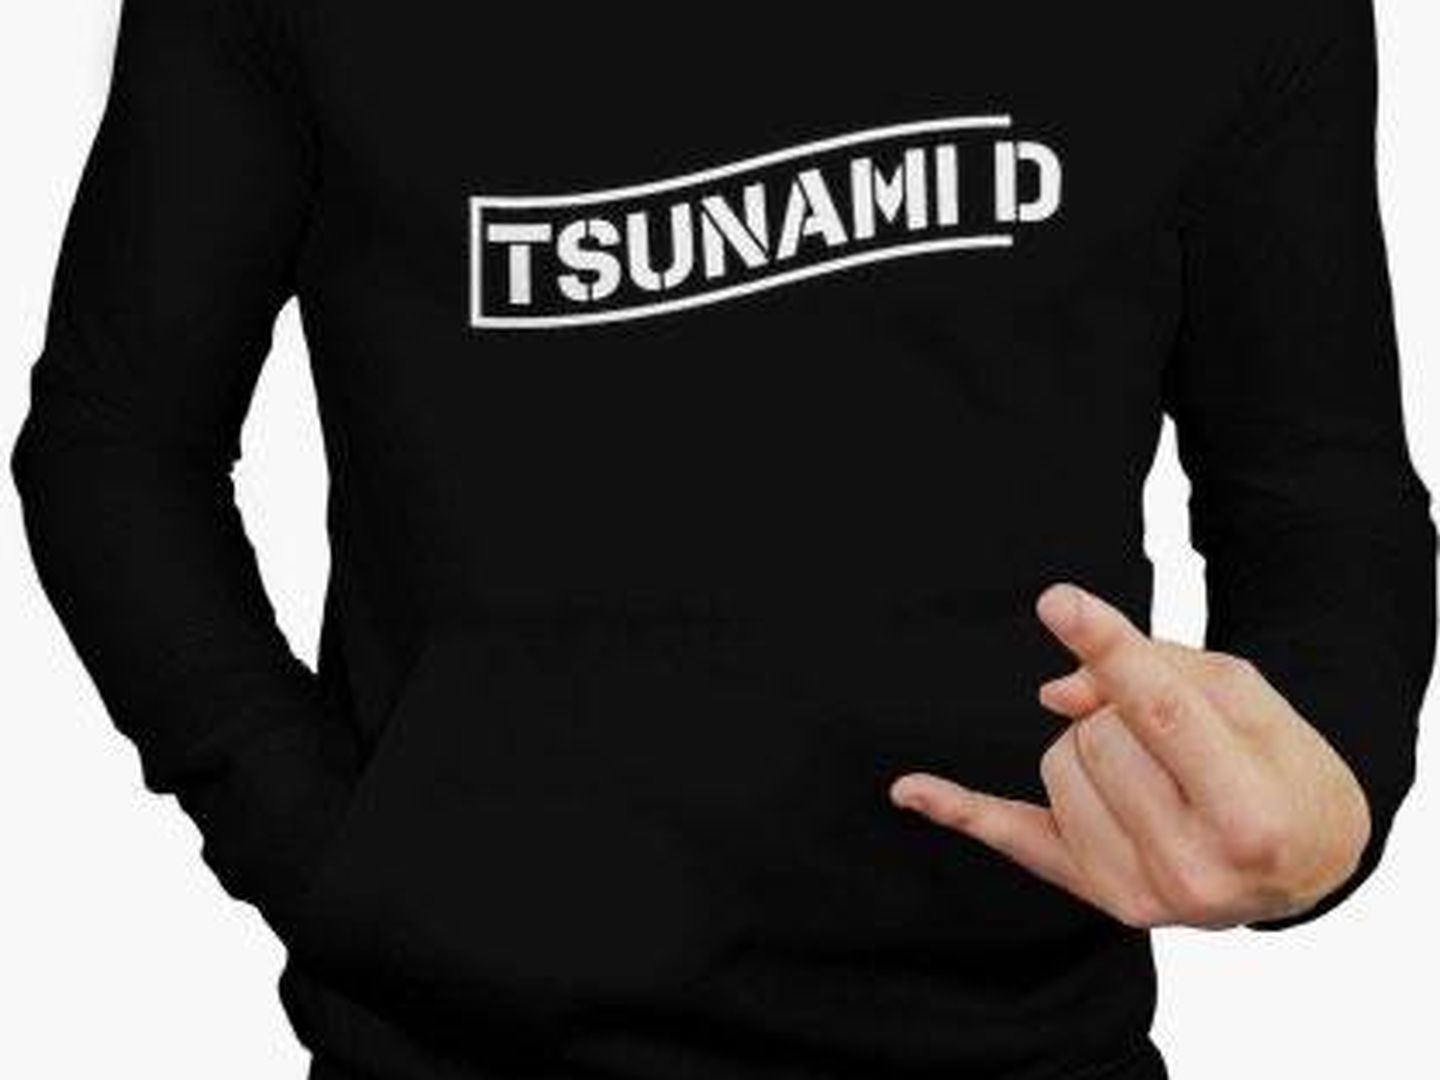 Una de las prendas de ropa vendidas en nombre de Tsunami Democràtic. (EC)